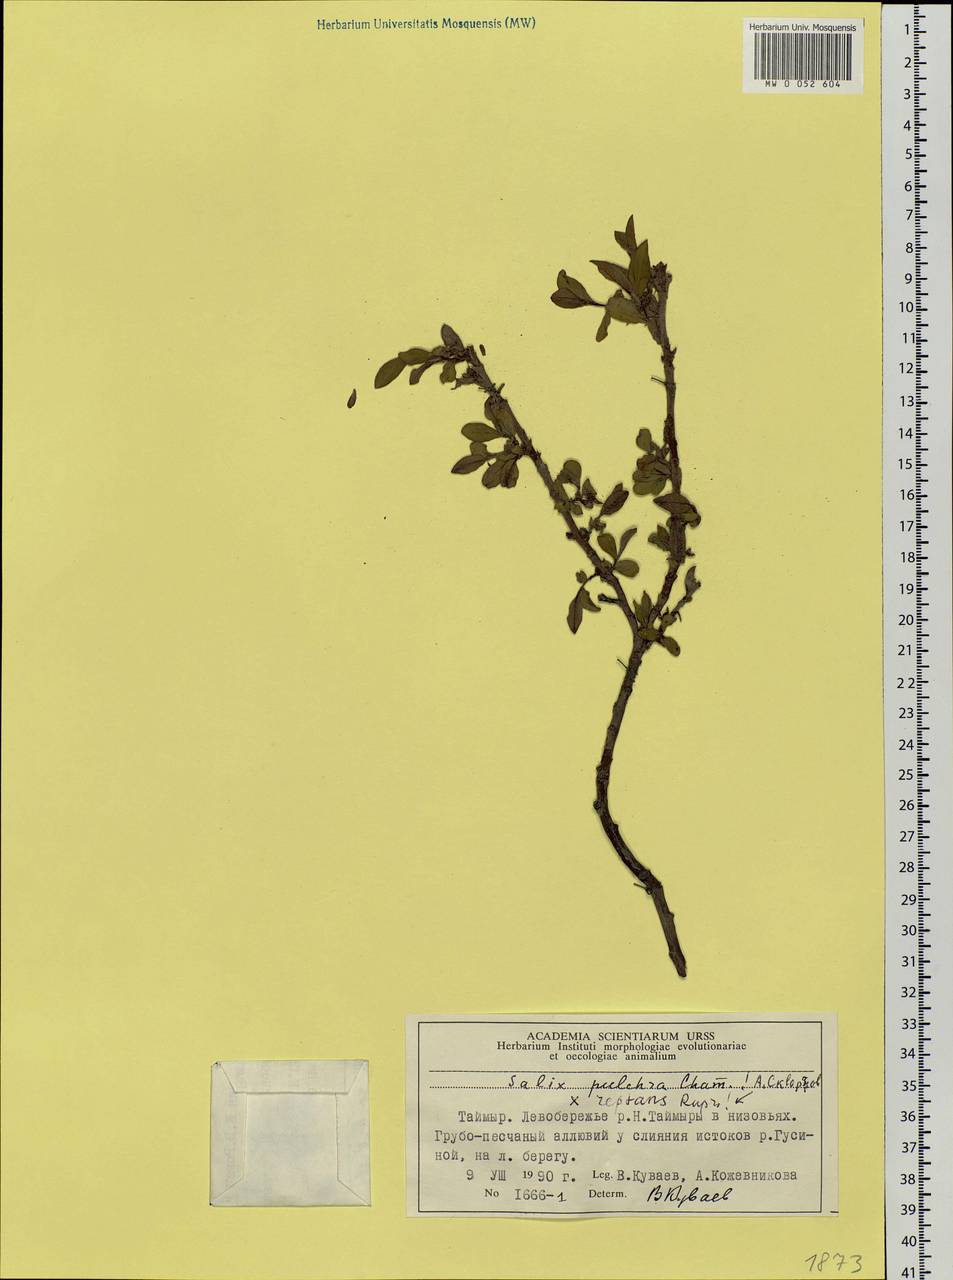 Salix reptans × pulchra, Siberia, Central Siberia (S3) (Russia)